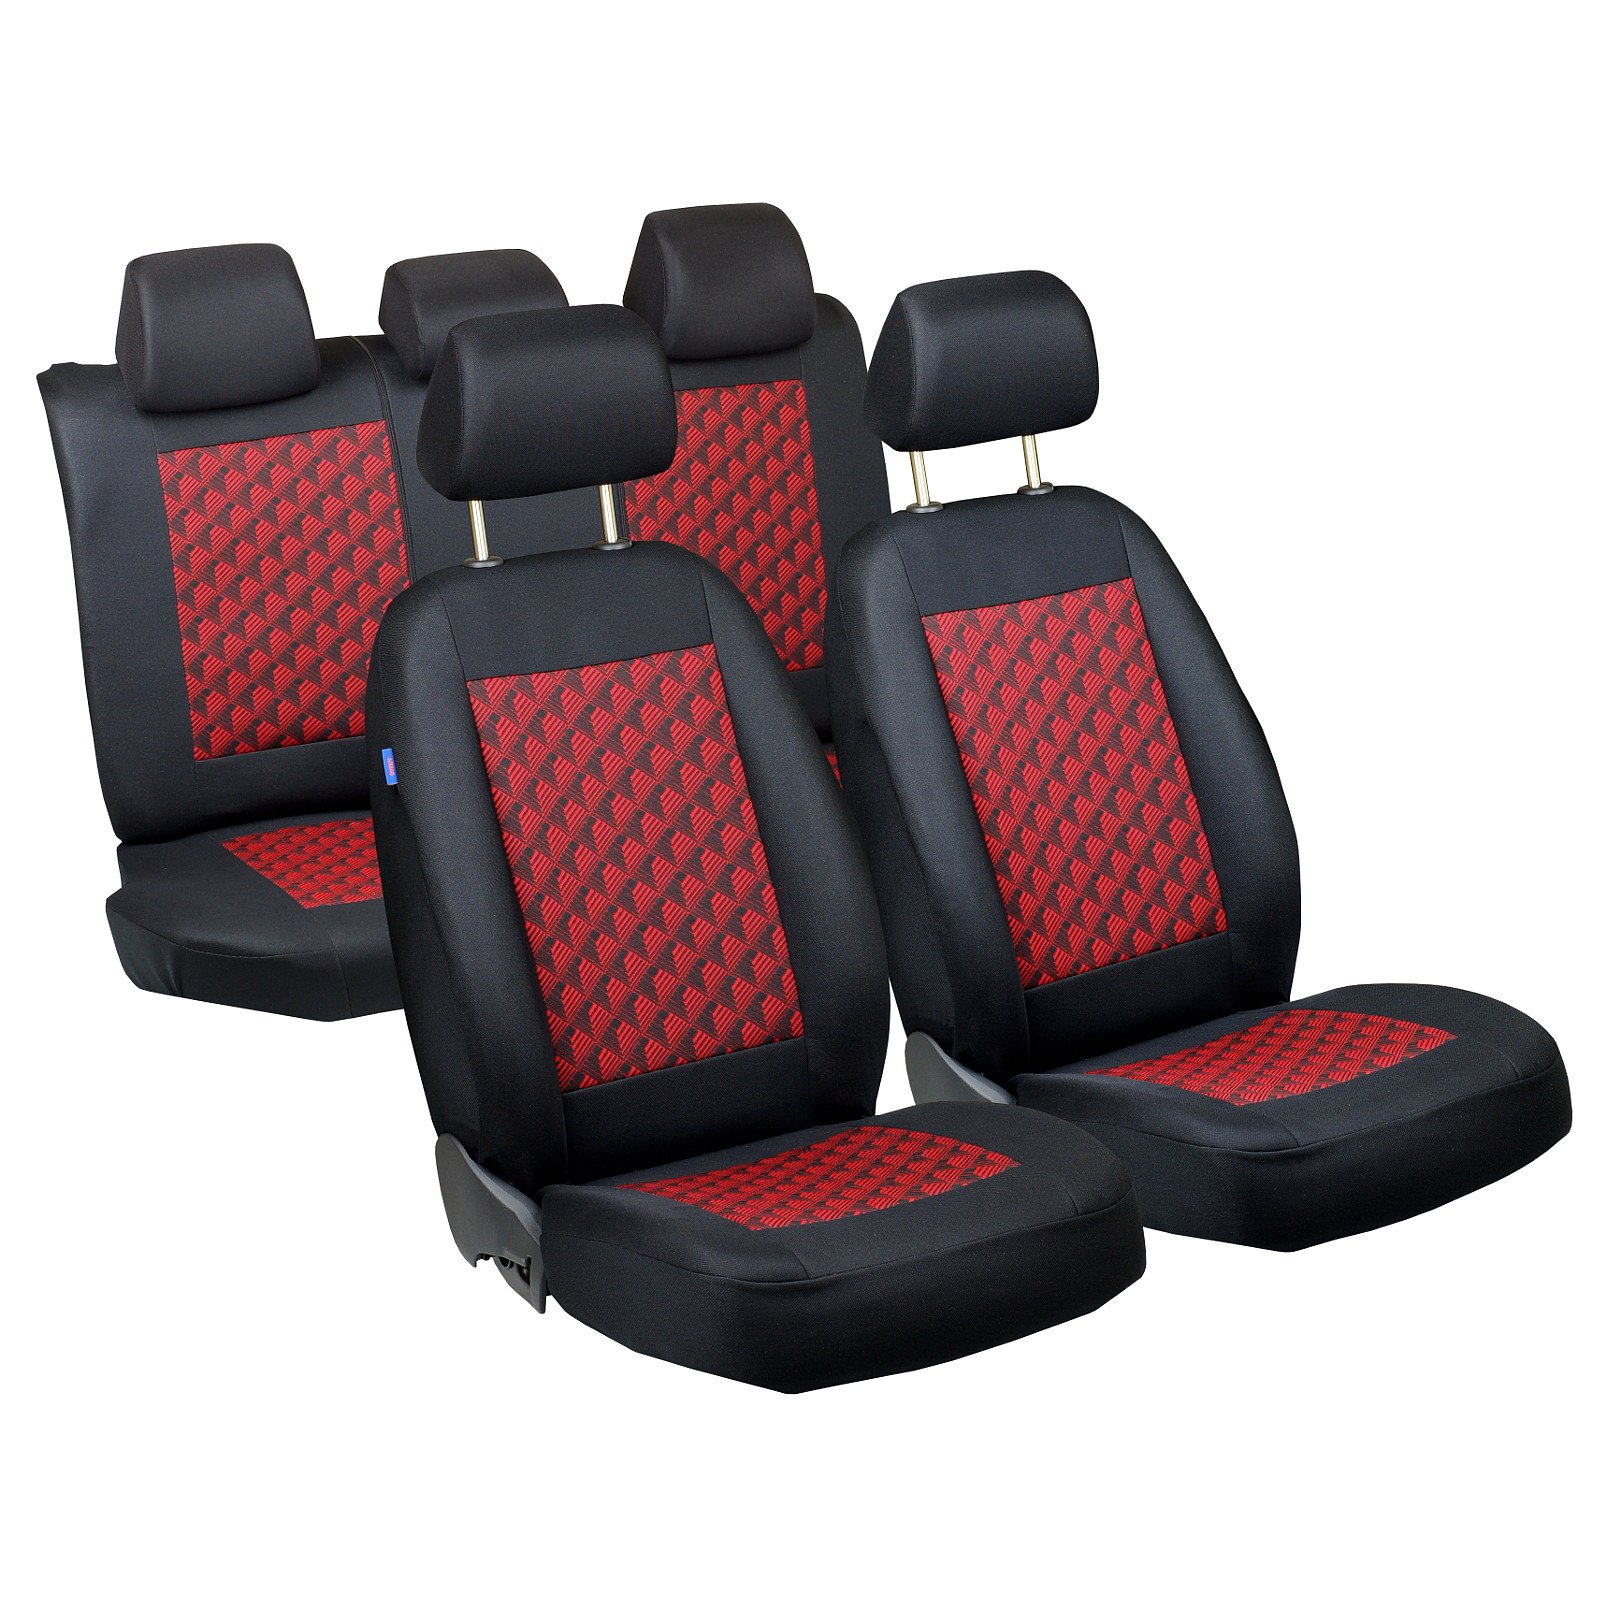 Laguna Sitzbezüge - 1 Set - Farbe Premium Schwarz-rot Effekt 3D